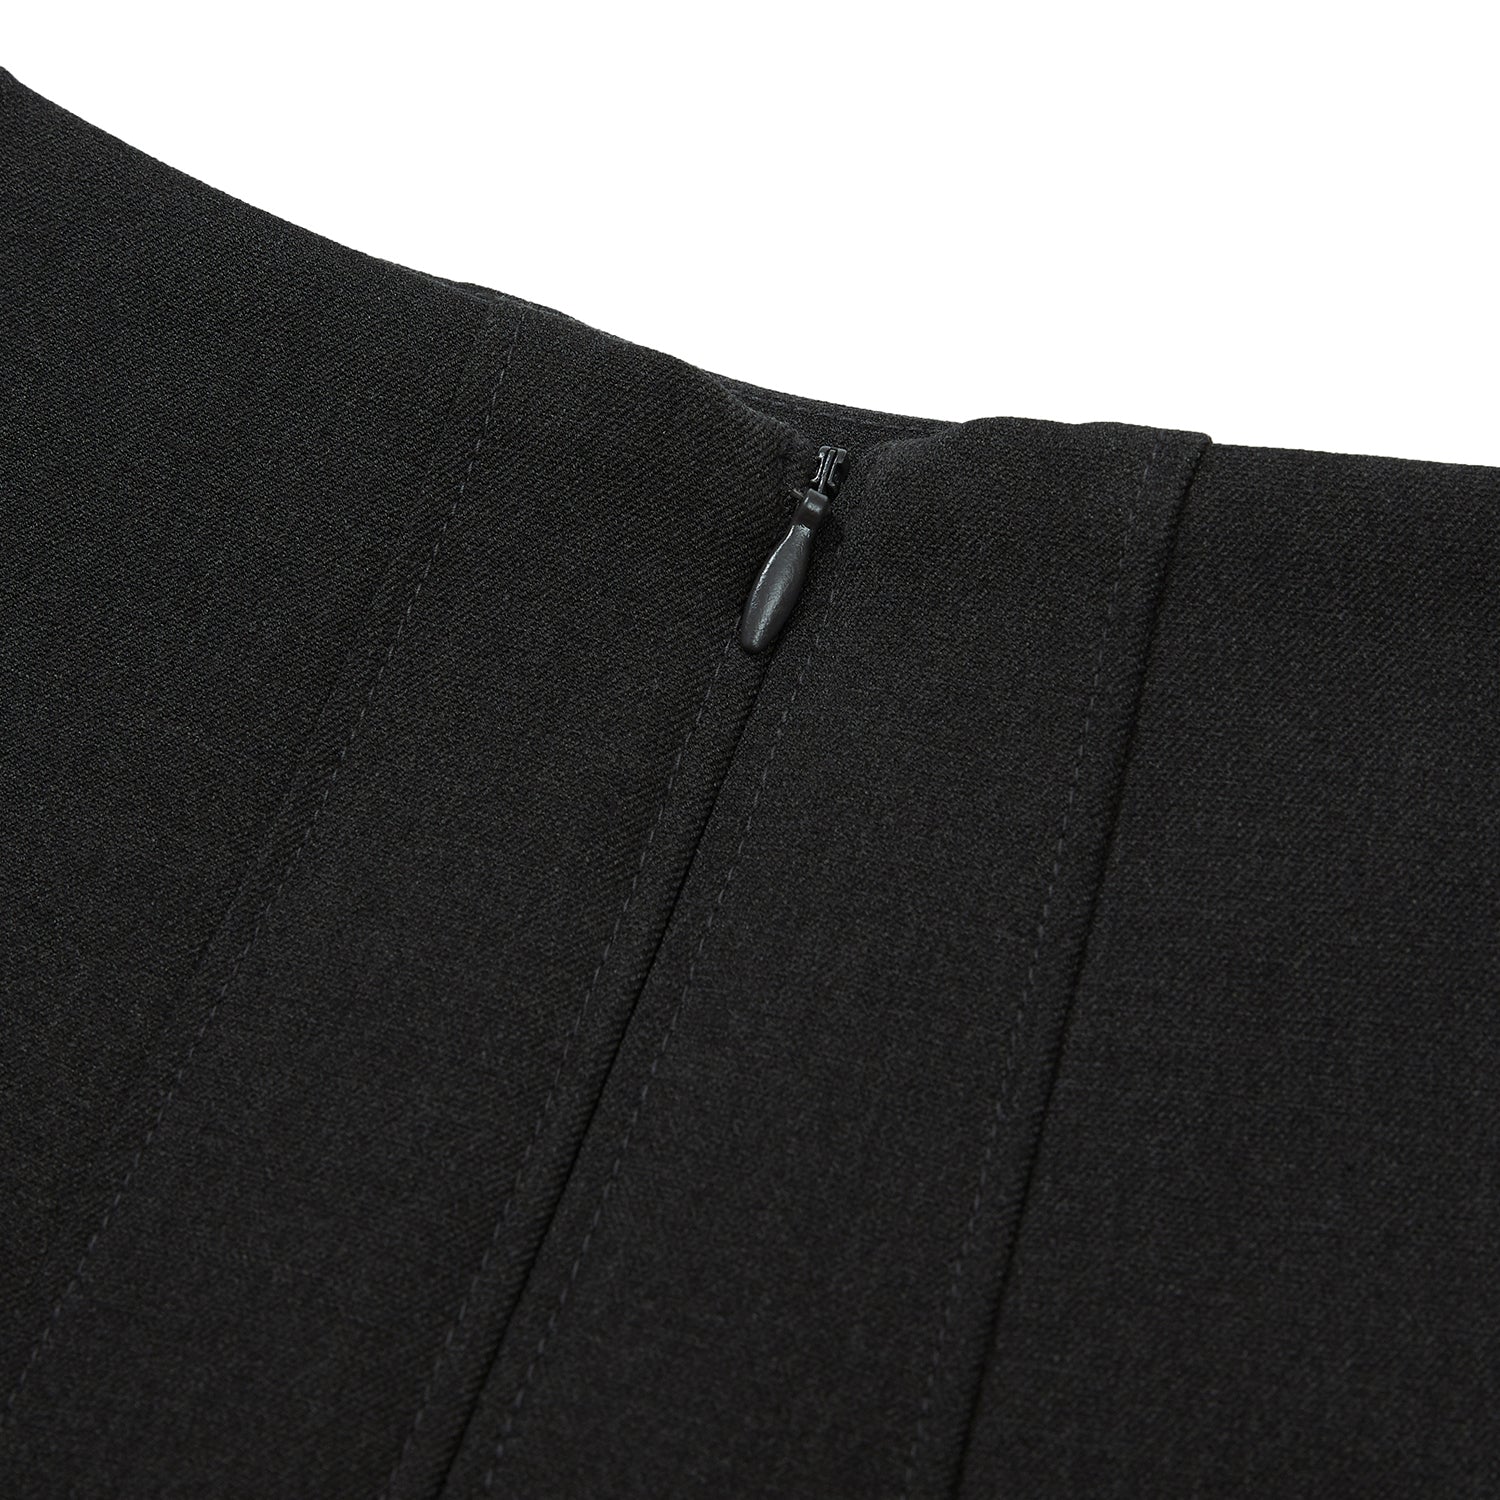 クラシックゴアミニスカート / Classic Gored Miniskirt [CHARCOAL]